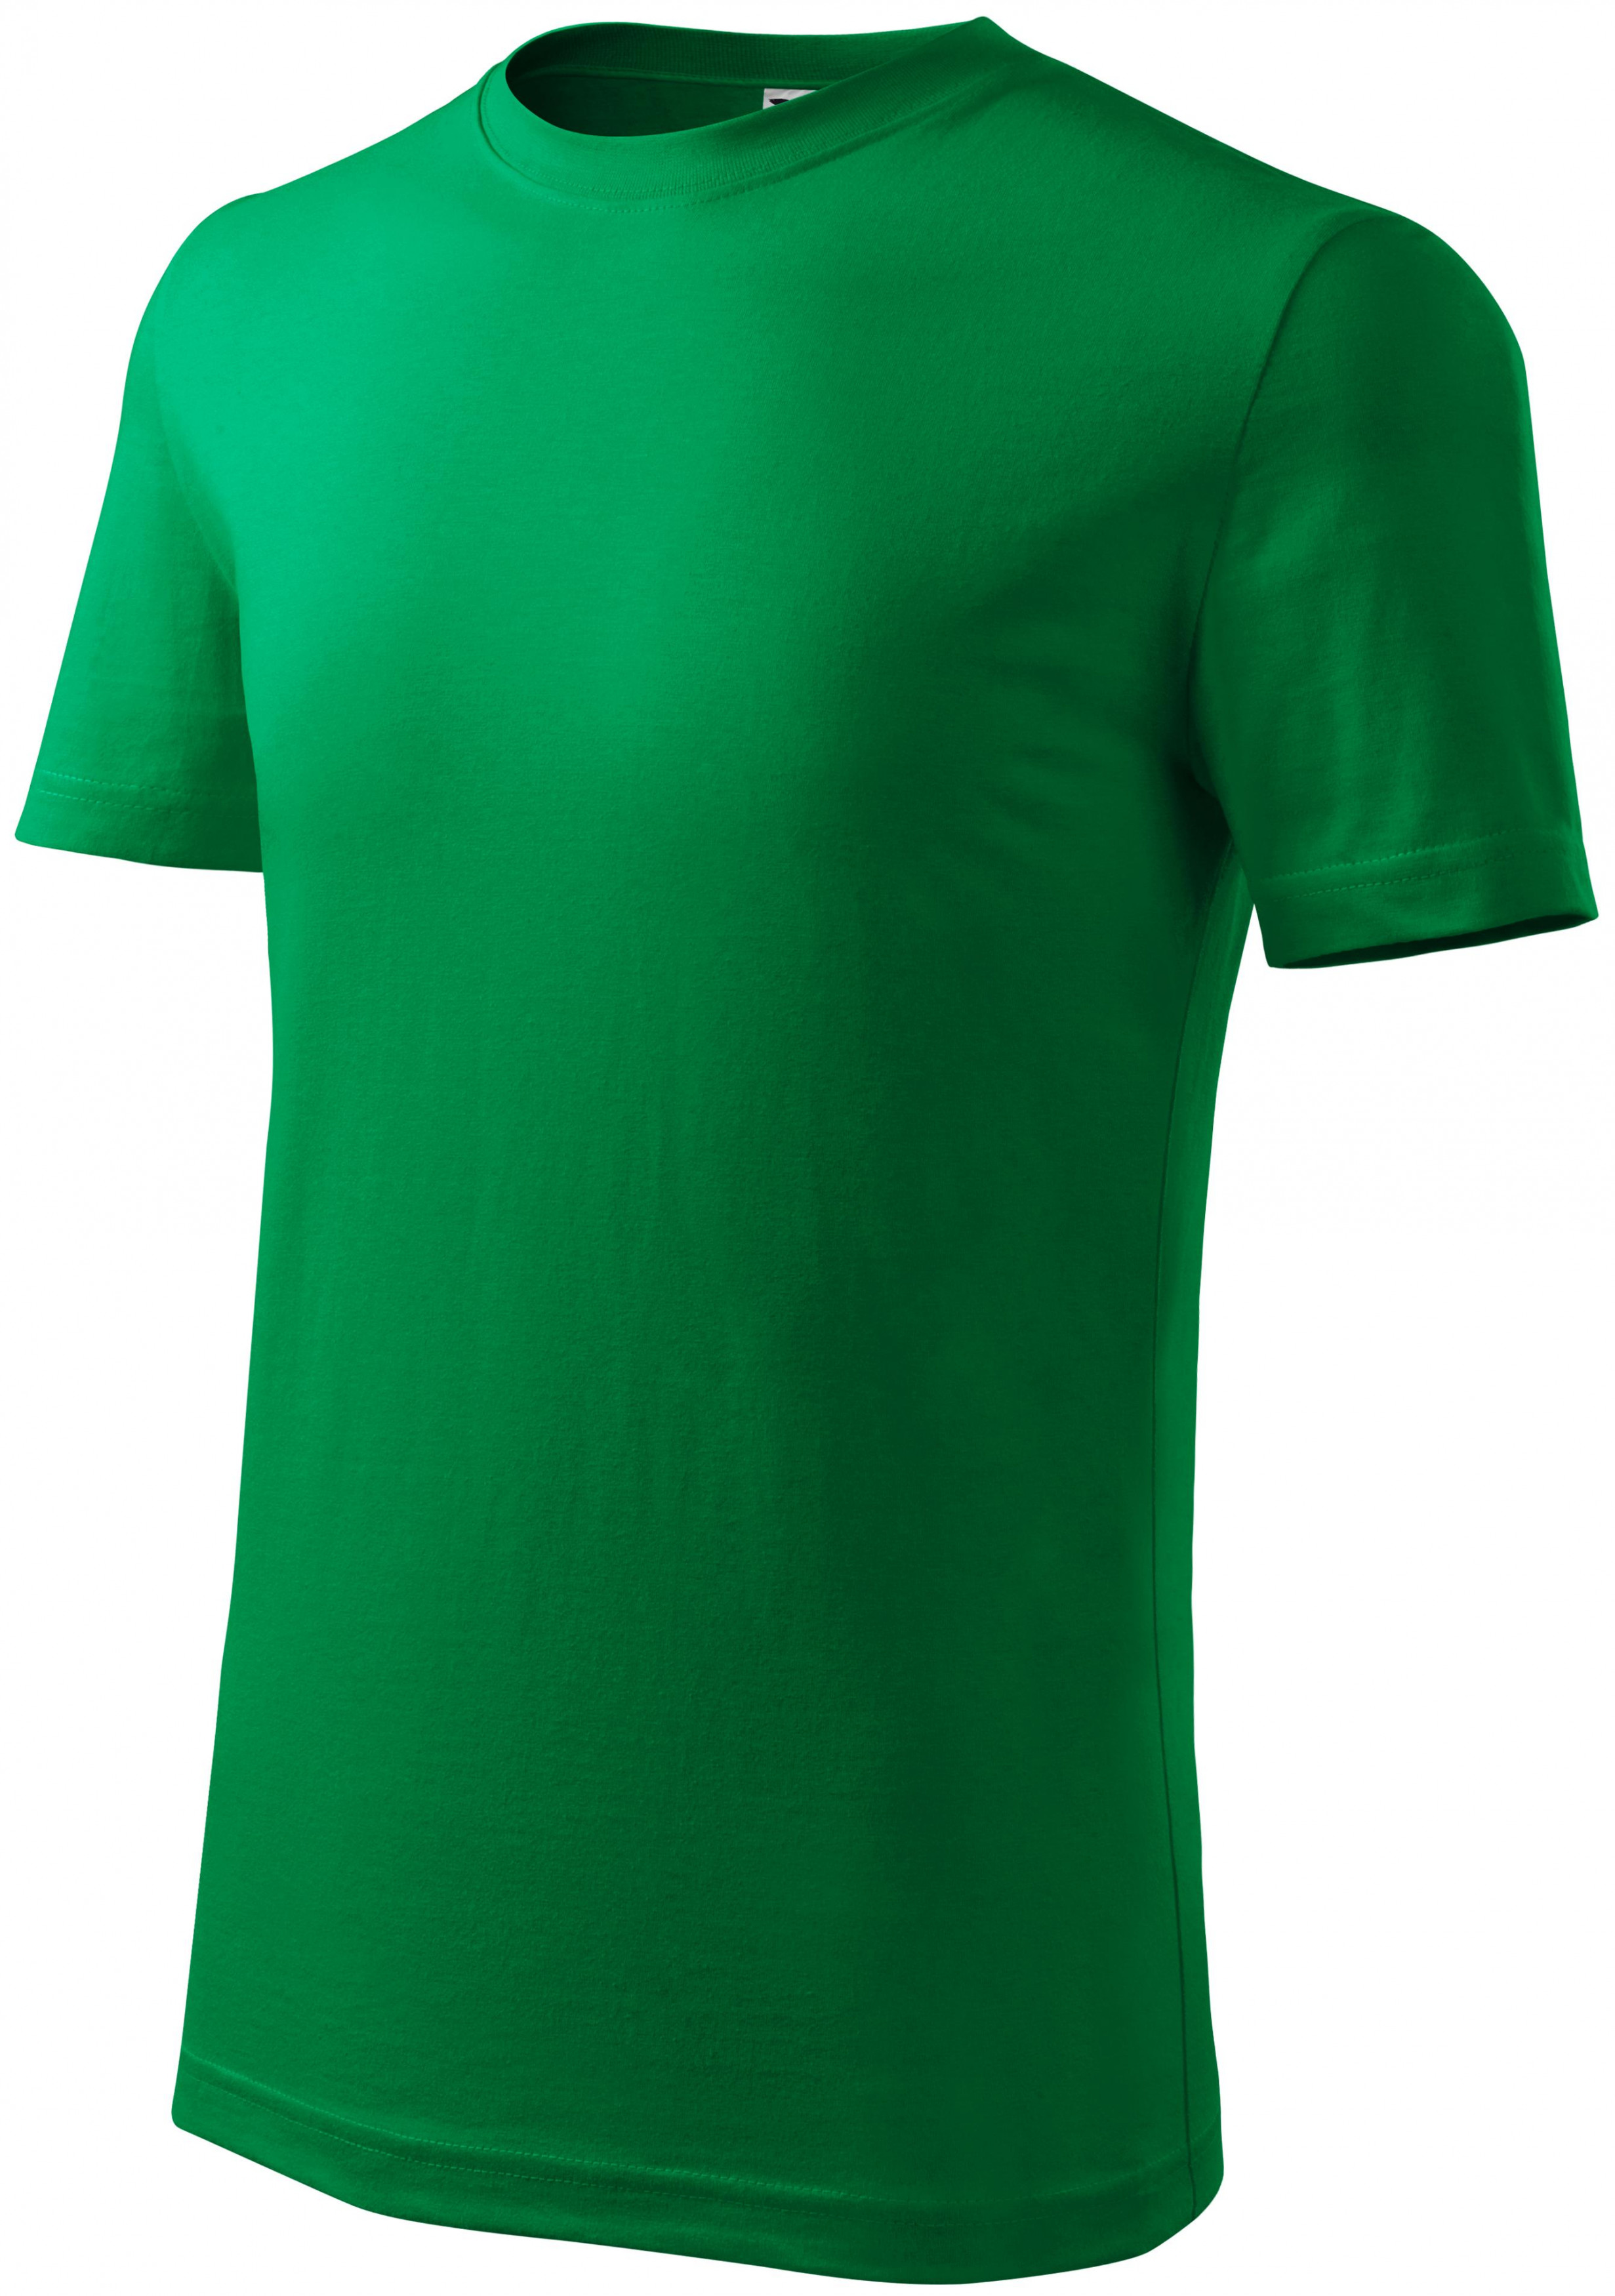 Detské tričko ľahšie, trávová zelená, 146cm / 10rokov